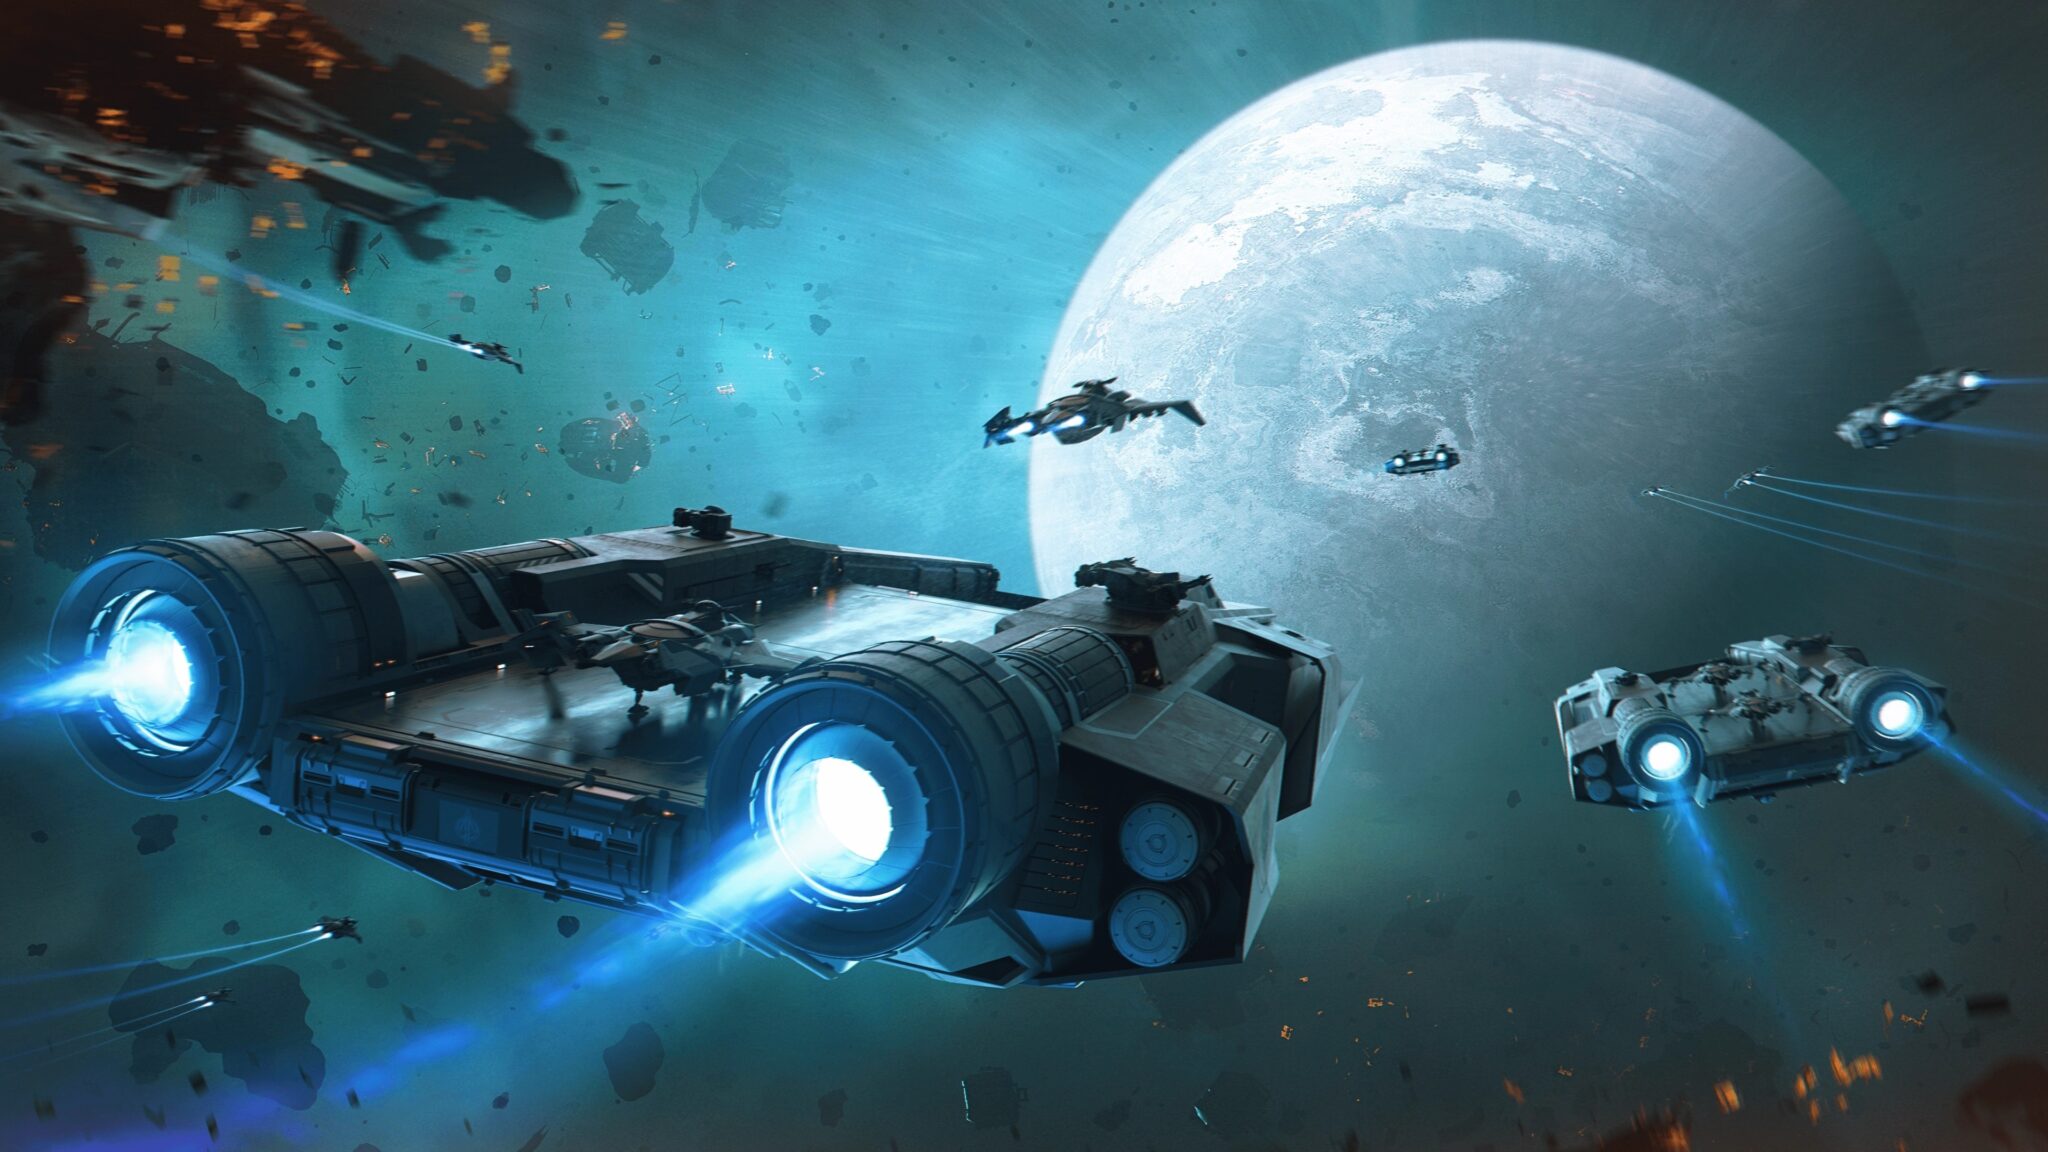 Oczywiście Cloud Imperium Games skorzystało z okazji i zaoferowało nowe statki kosmiczne do sprzedaży na Citizenconie.